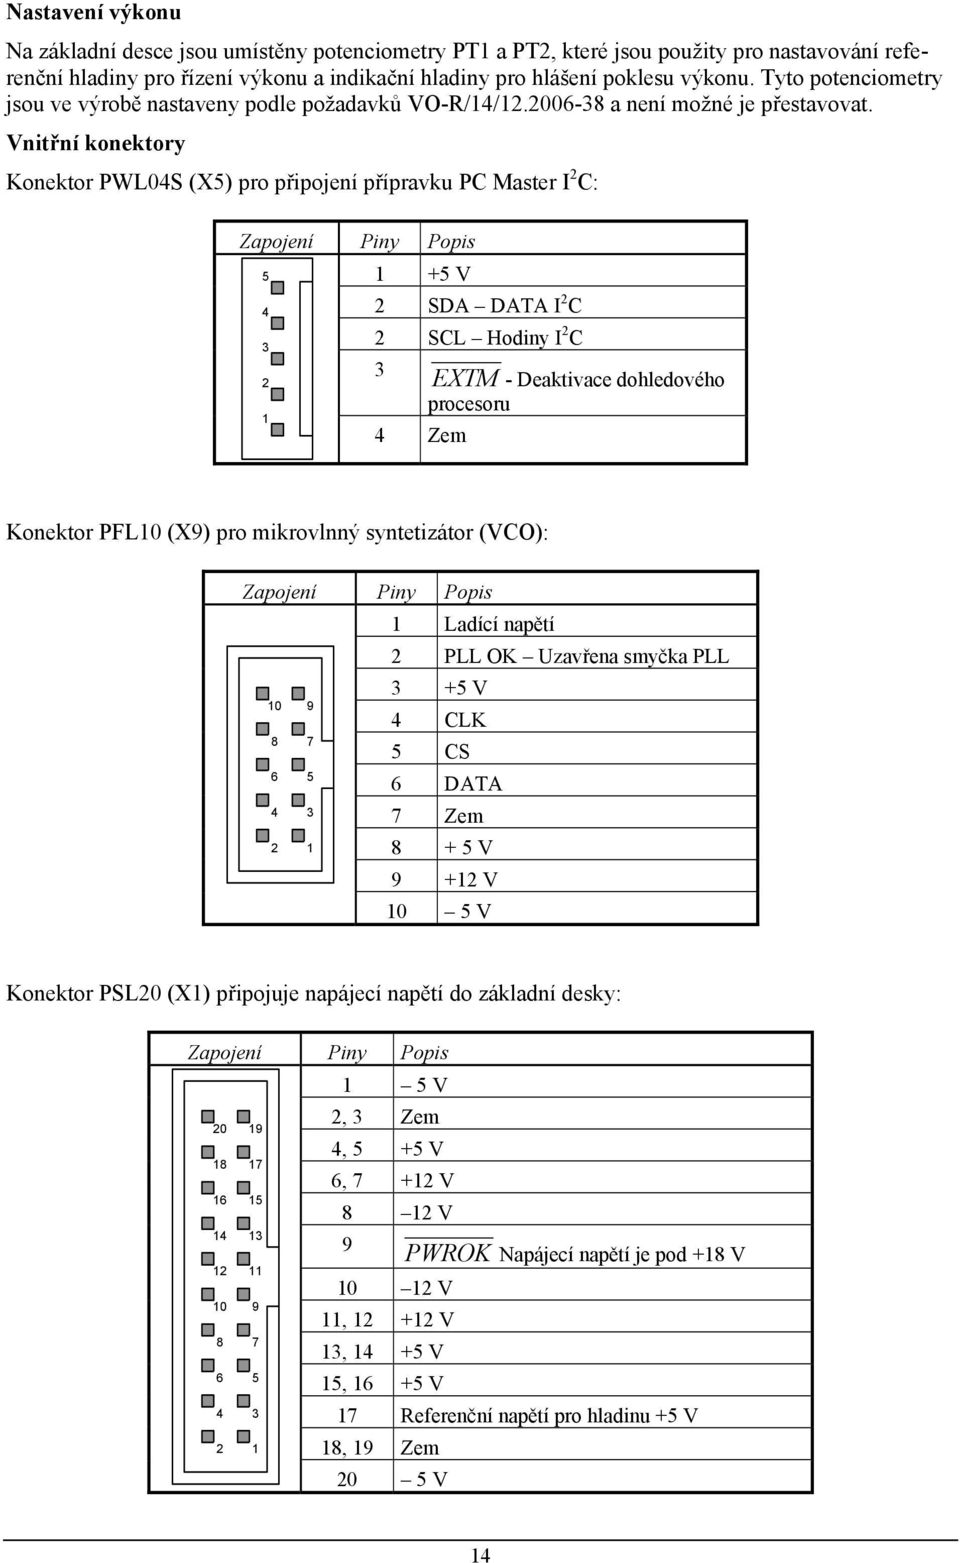 Vnitřní konektory Konektor PWL04S (X5) pro připojení přípravku PC Master I 2 C: Zapojení Piny Popis 5 4 3 2 1 1 +5 V 2 SDA DATA I 2 C 2 SCL Hodiny I 2 C 3 EXTM - Deaktivace dohledového procesoru 4